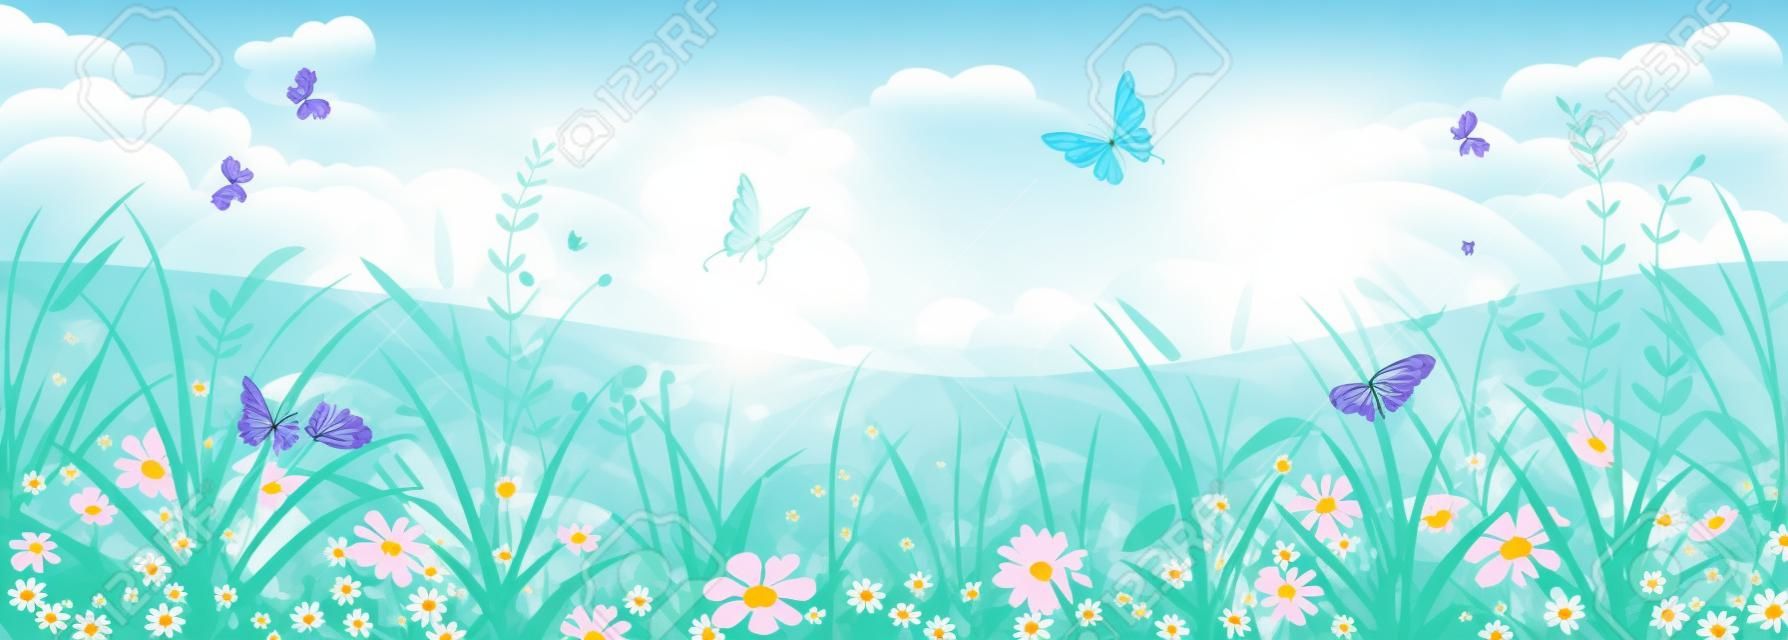 꽃 여름이나 봄 풍경, 꽃, 푸른 하늘과 나비와 초원